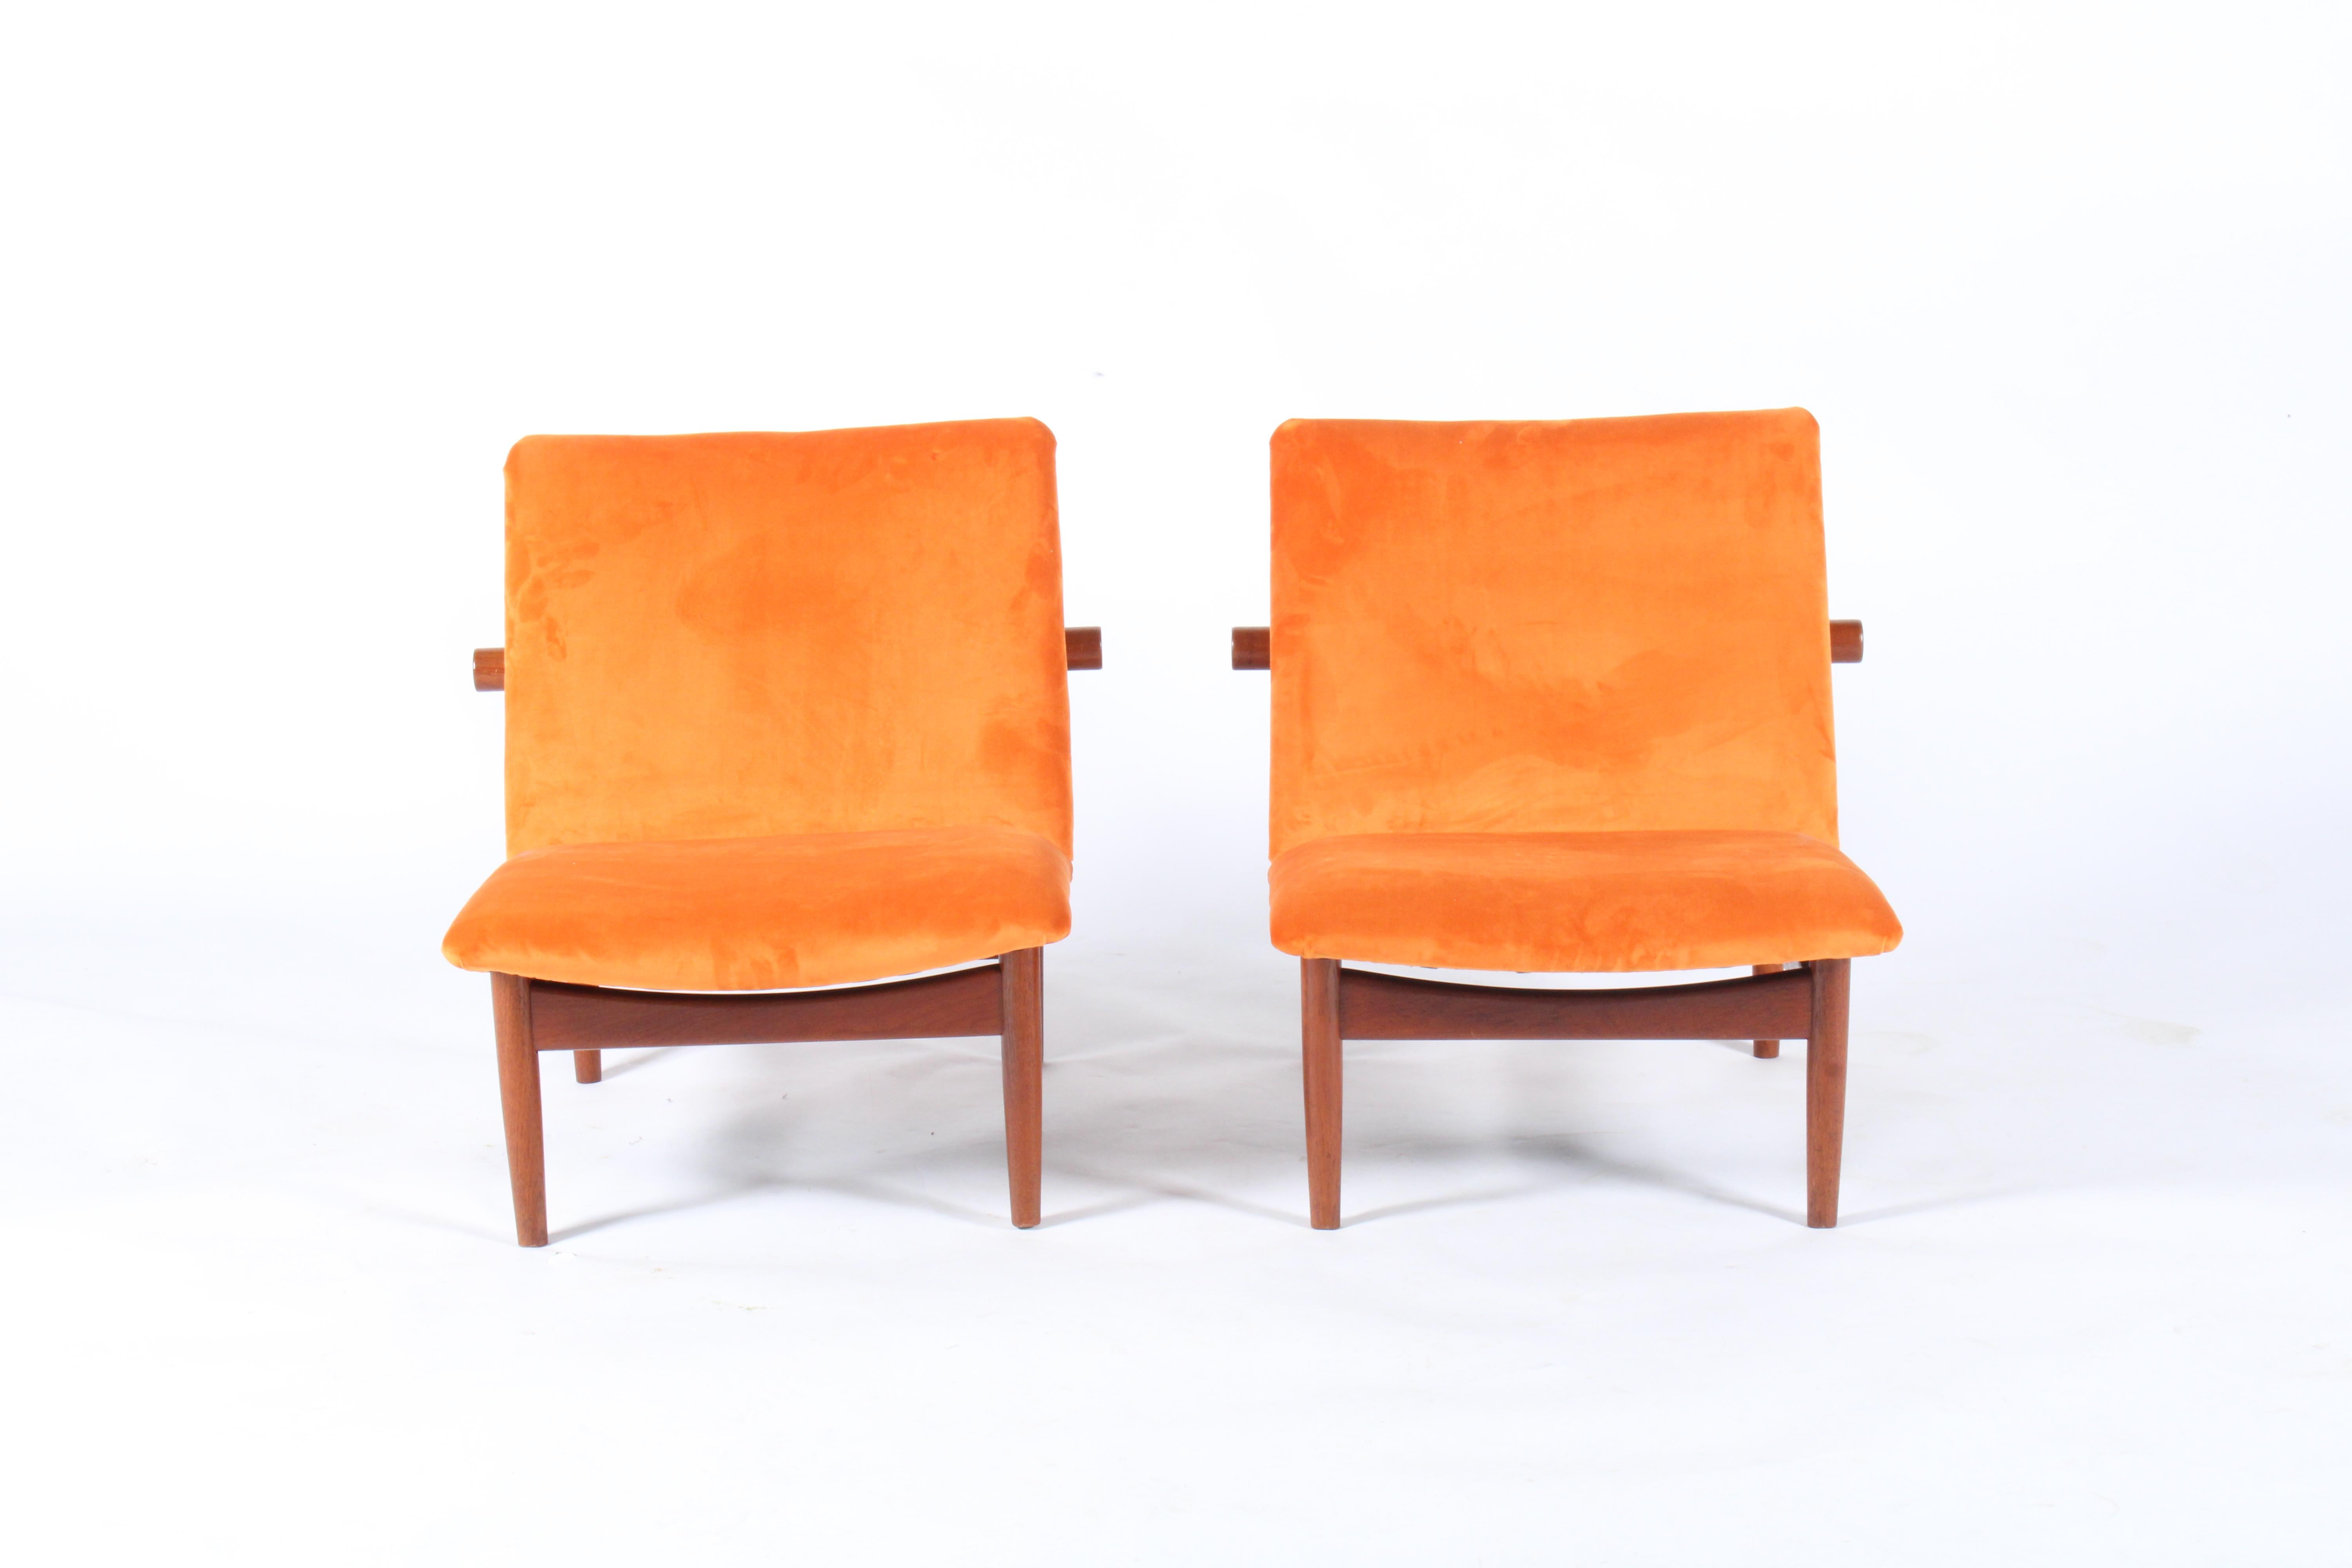 Pair of Iconic Danish Design Japan Chairs by Finn Juhl for France & Daverkosen 4